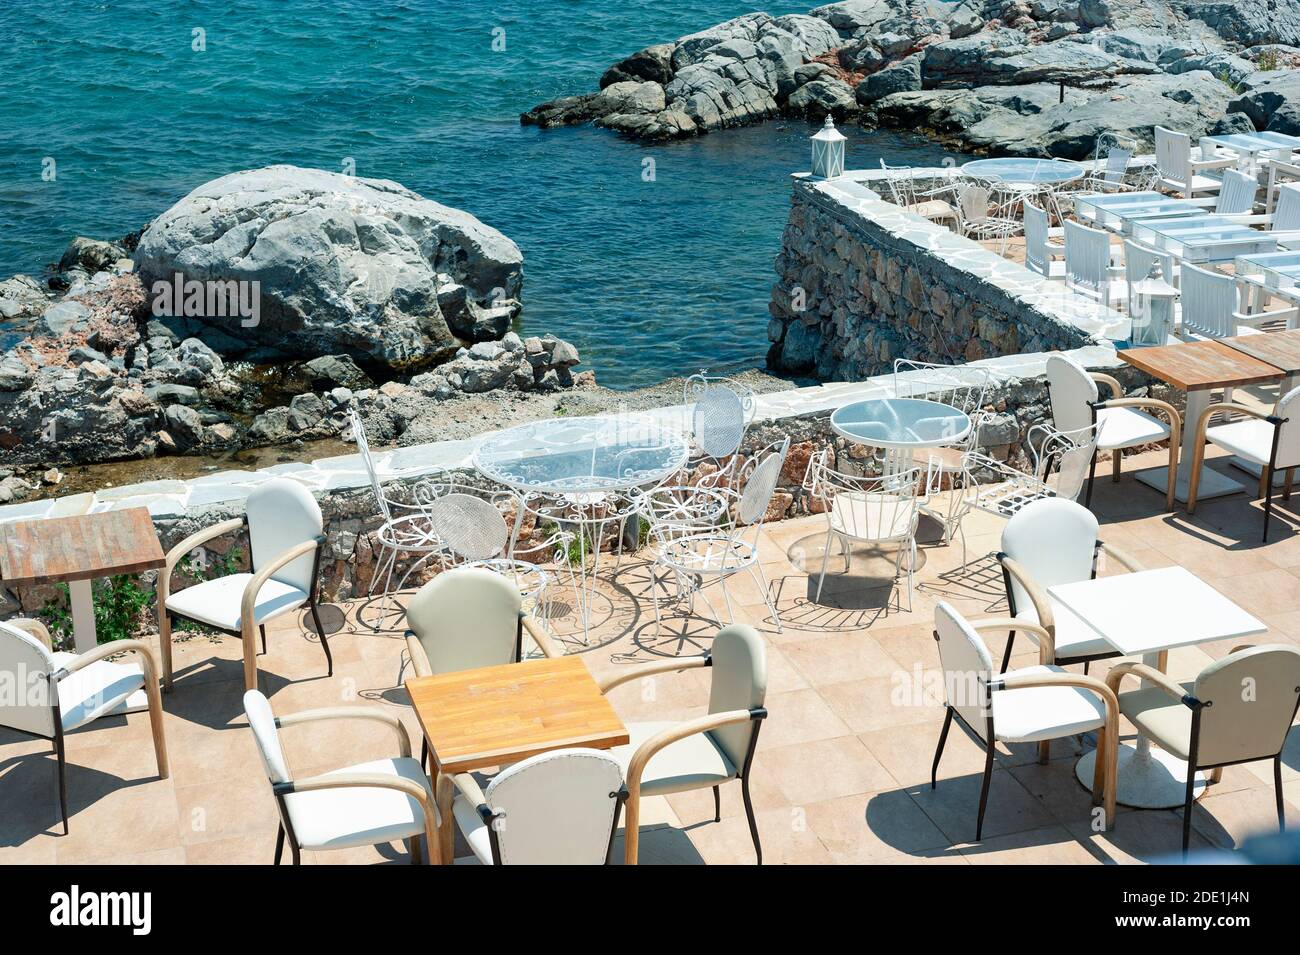 Blick auf eine leere Taverne am Meer auf der Insel Salamina, Griechenland Stockfoto